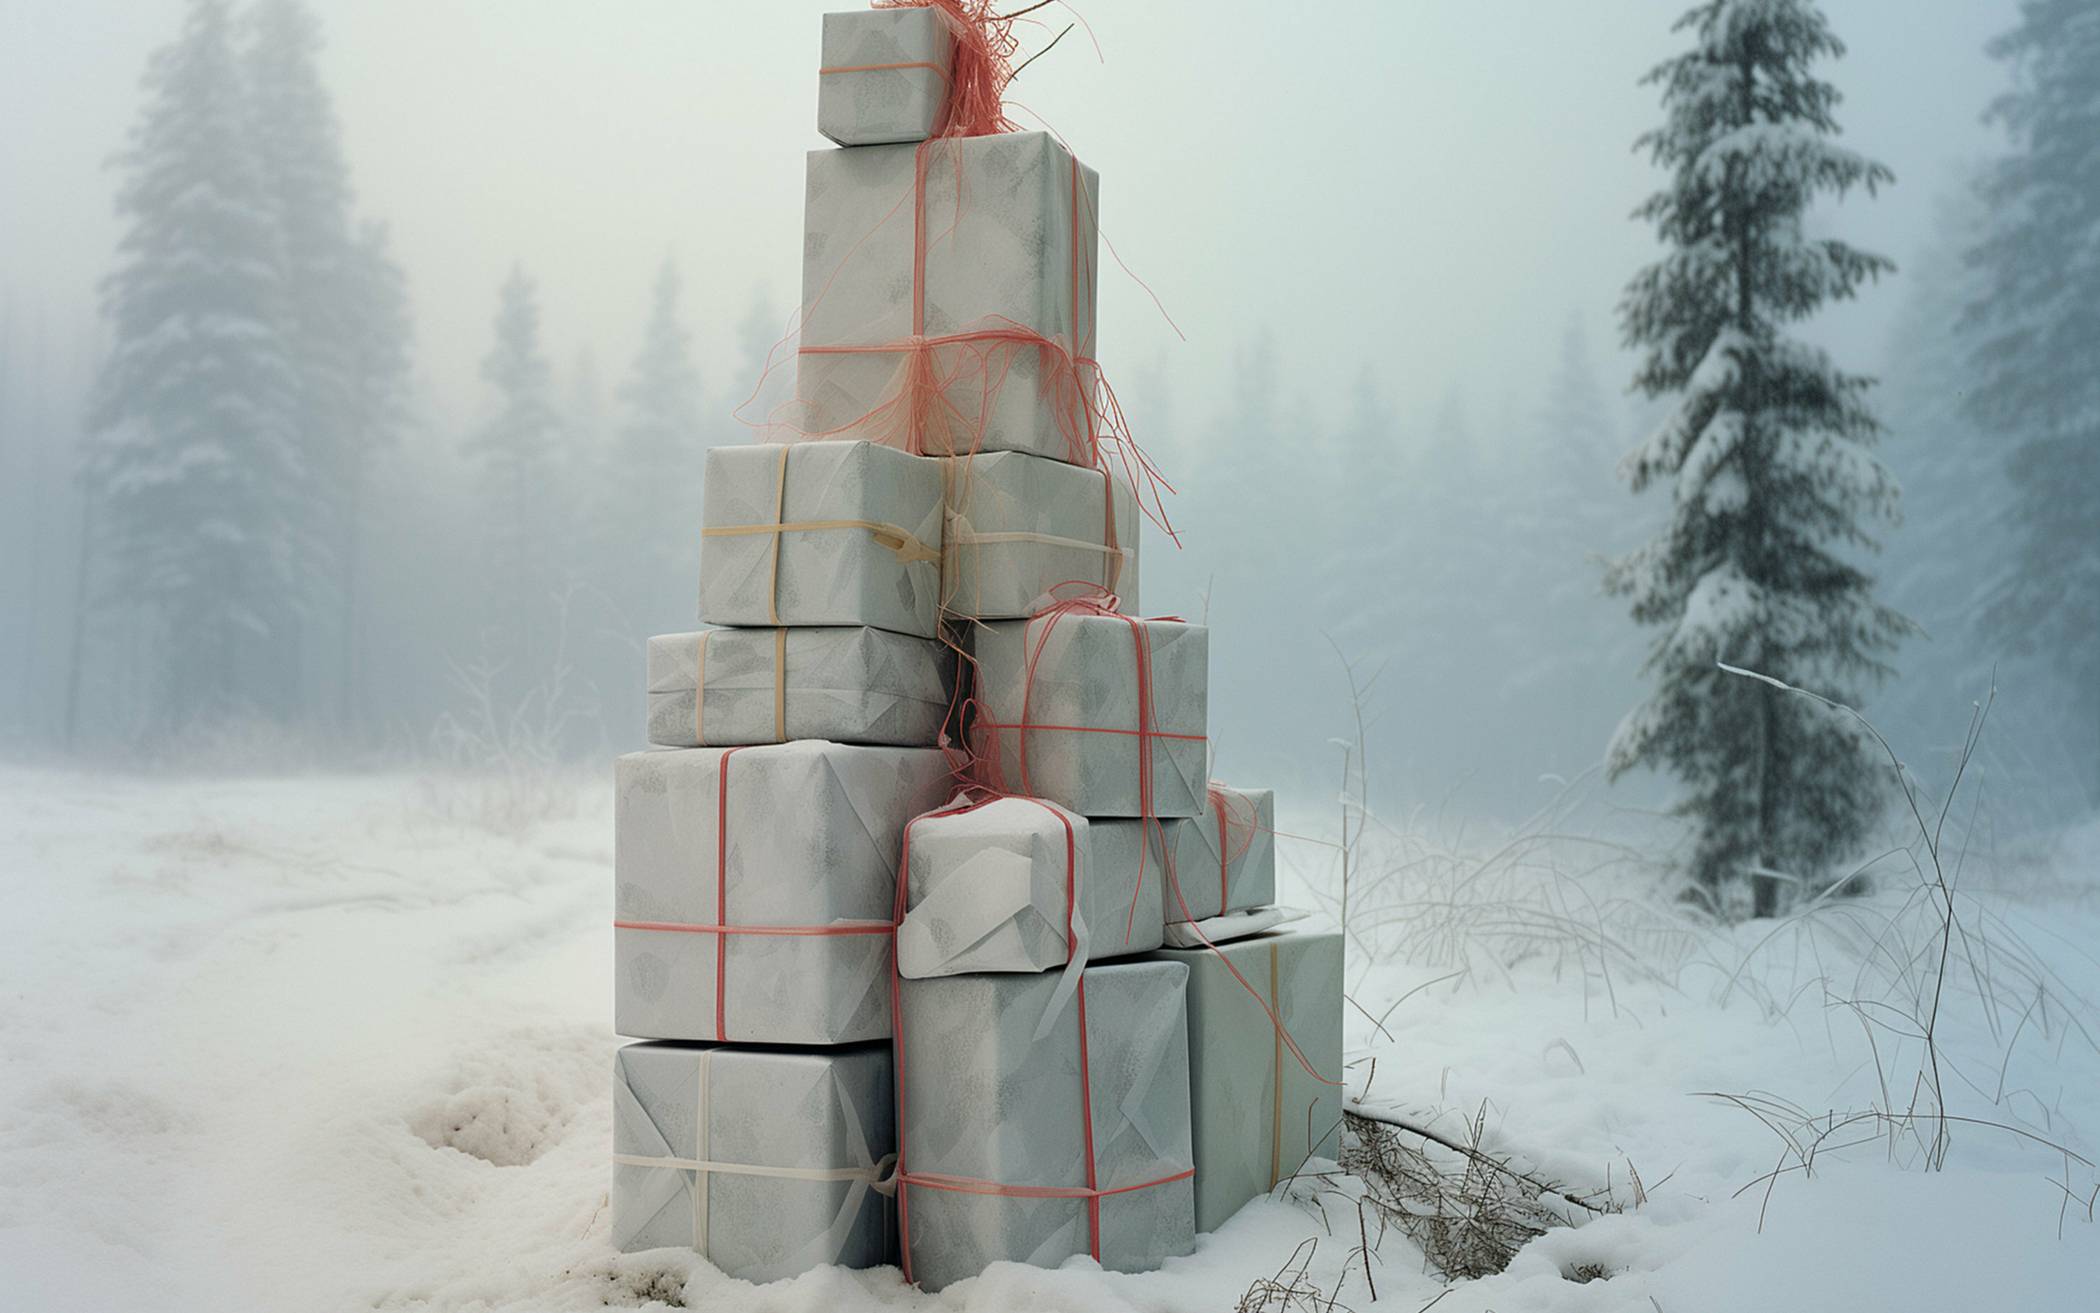  Aufgabenstellung: „Ein Weihnachtsbaum im schneebedeckten Wald, der sich aus Geschenkpaketen zusammensetzt.“ 